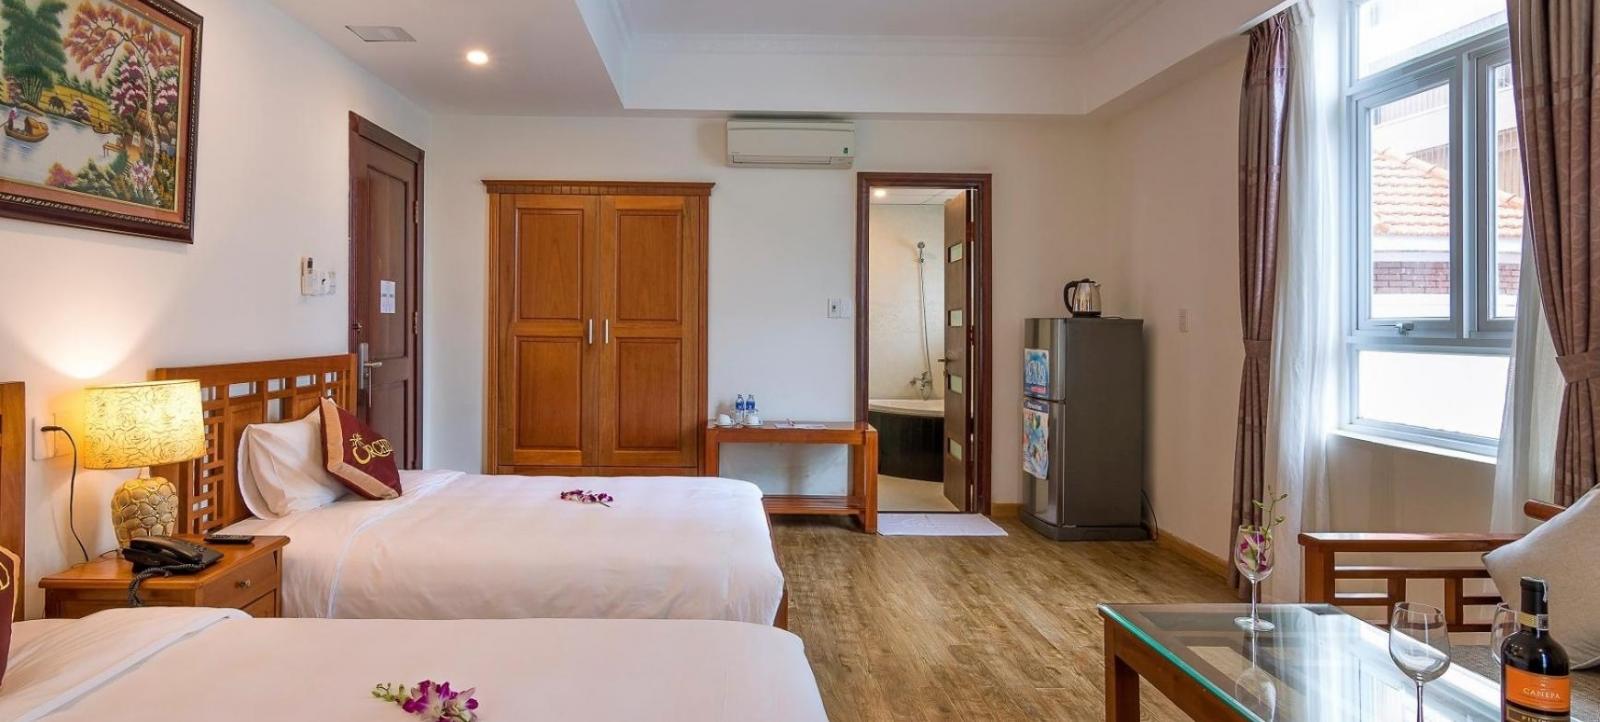 Bán khách sạn 3 sao 62 phòng mặt tiền Võ Nguyên Giáp, Đà Nẵng